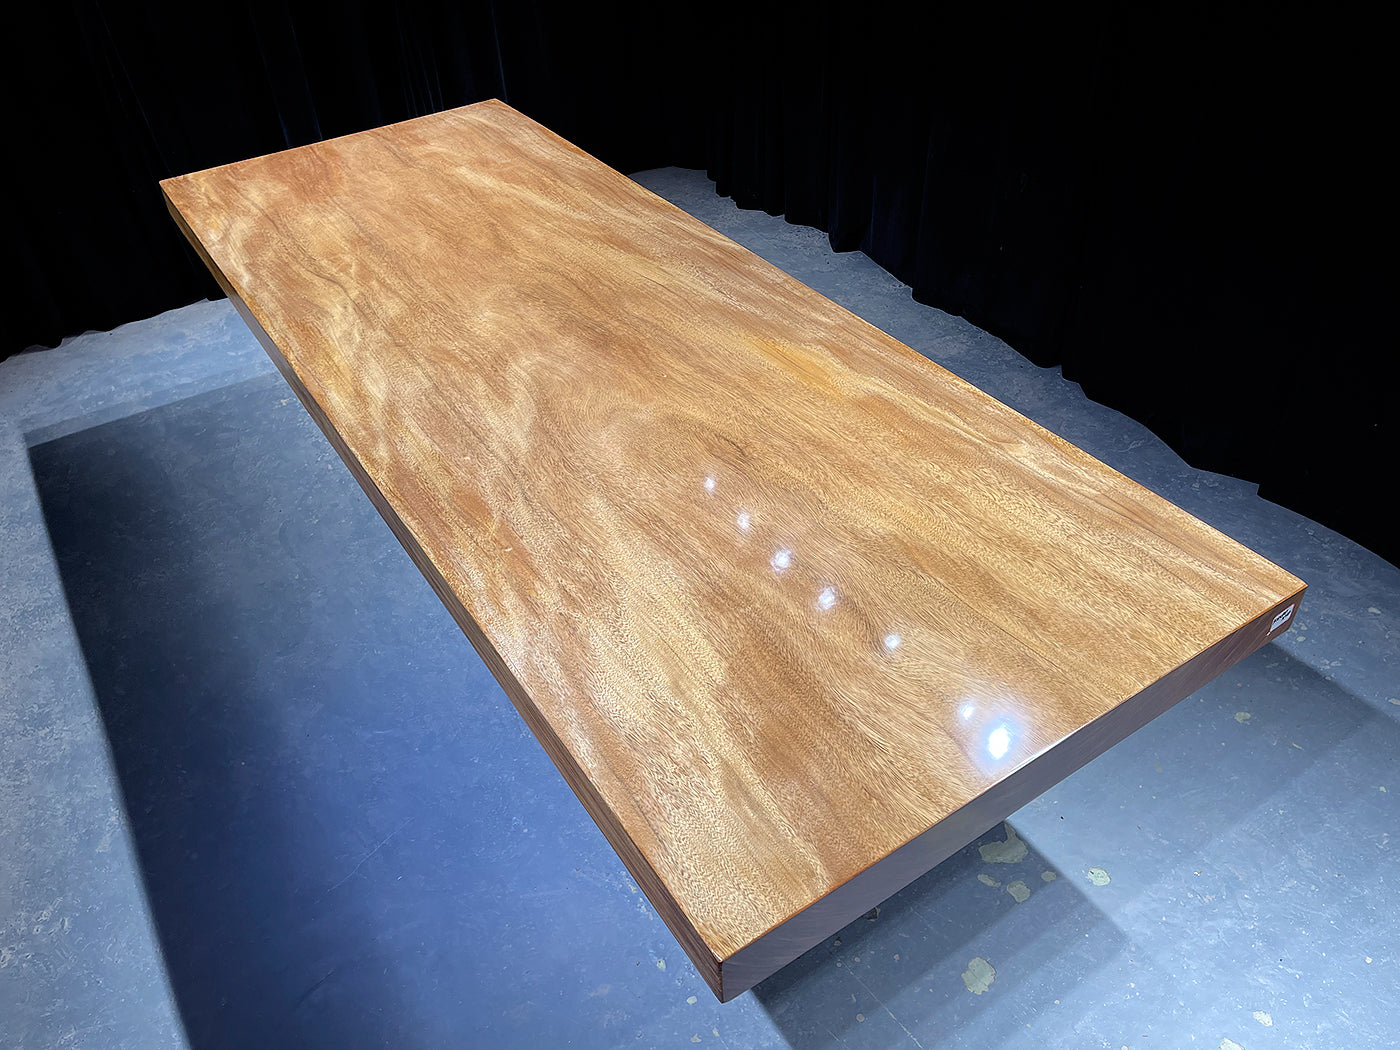 Tampo de mesa em laje de madeira Natural Terminalia com borda viva